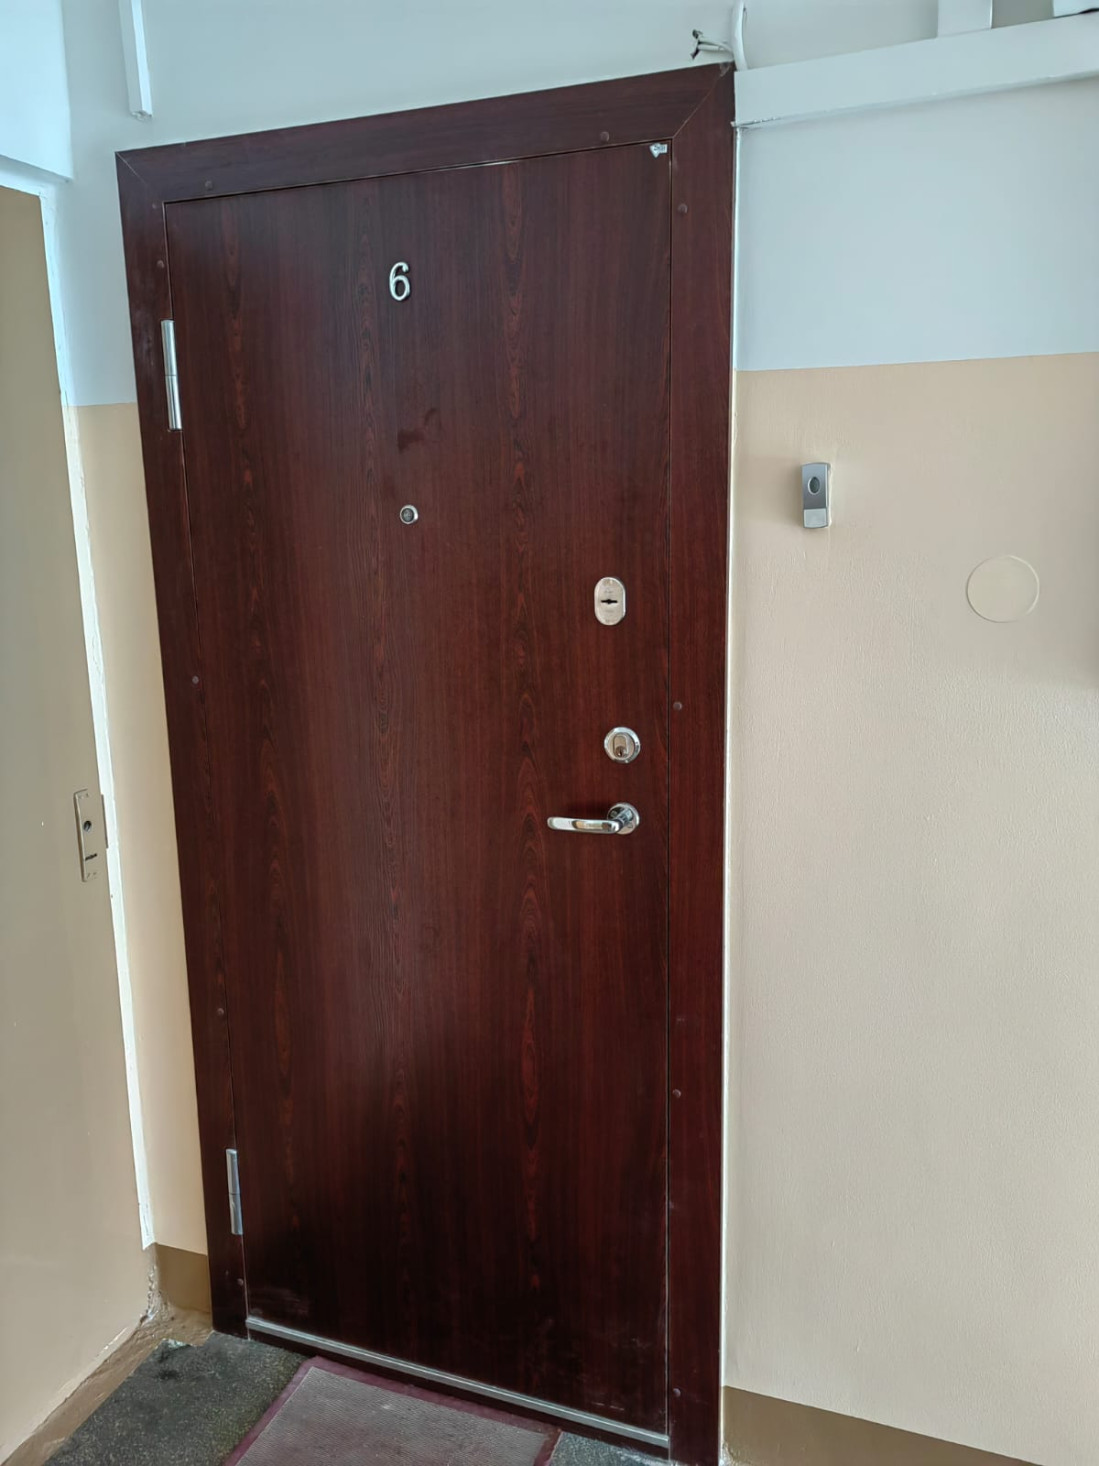 Железная дверь квартиры имеет имитацию деревянной поверхности